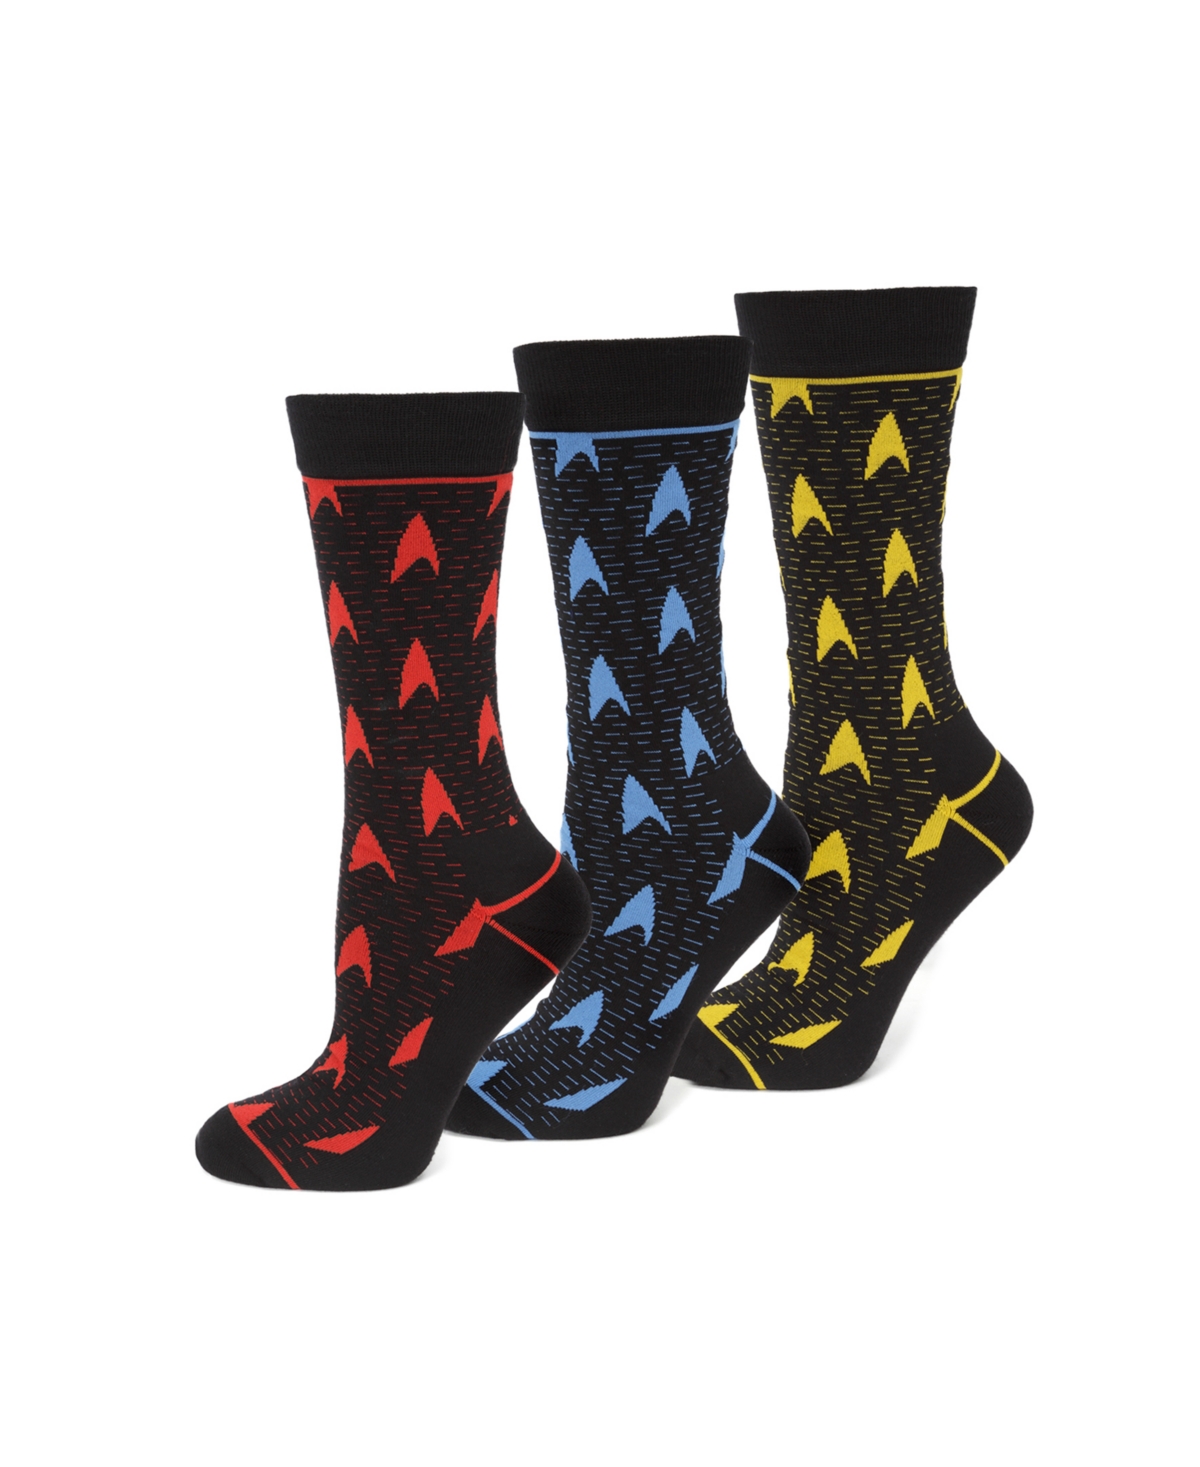 Men's Sock Gift Set, Pack of 3 - Black